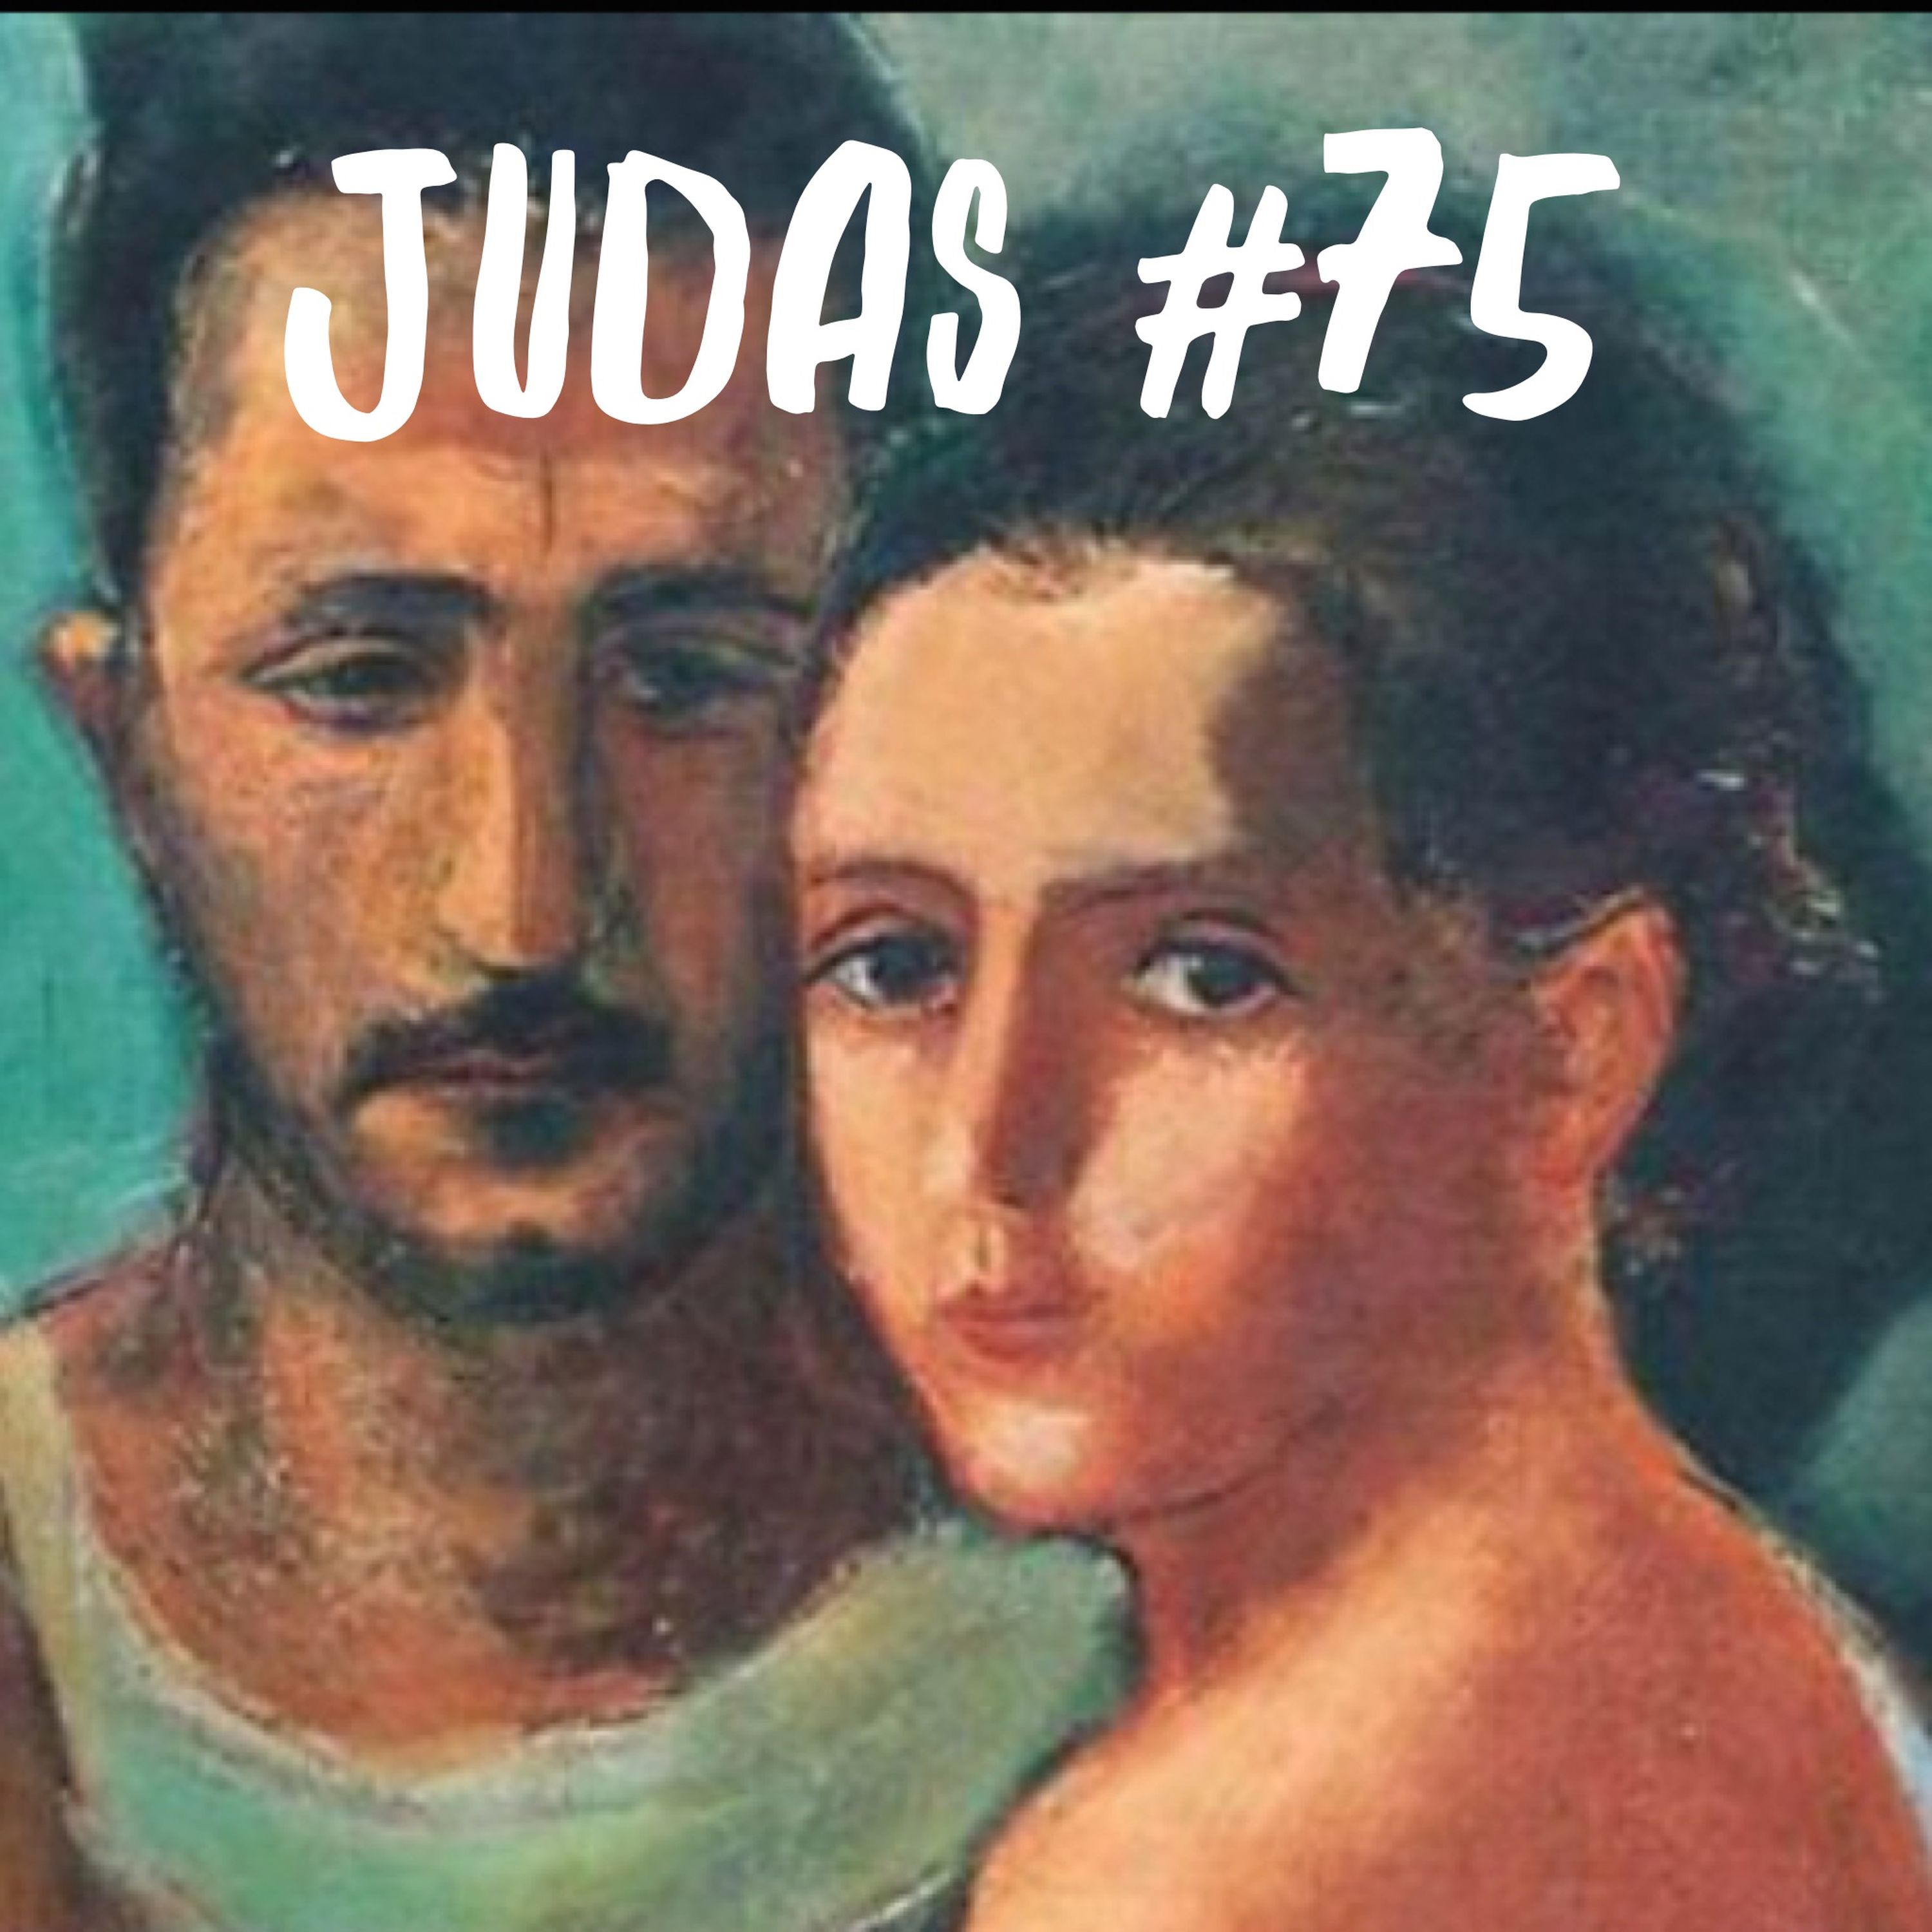 Judas #75